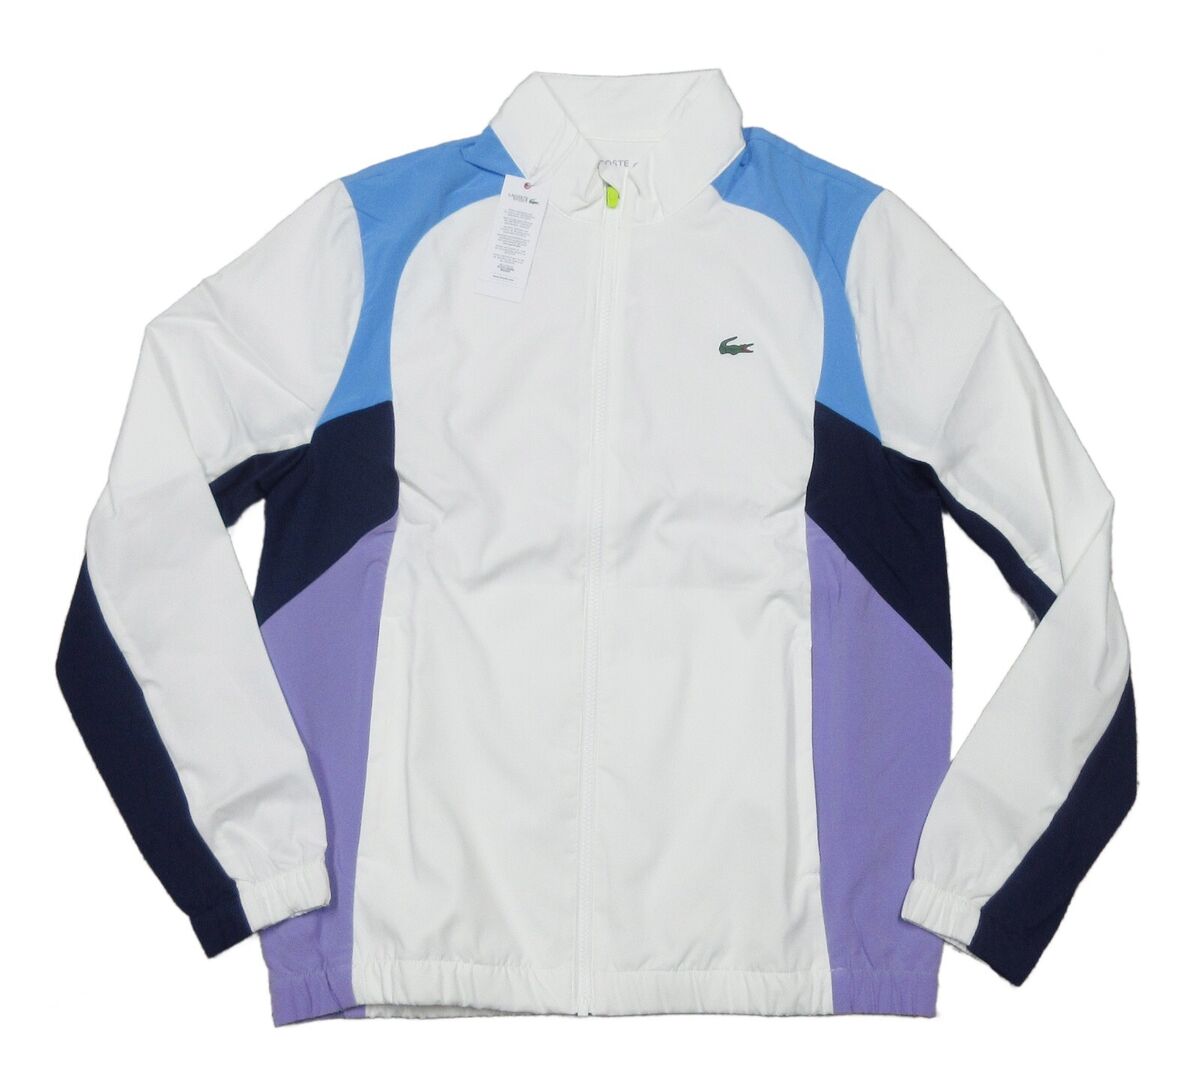 Lacoste Sport Men's White Colorblock Jacket & Pants 2 Piece Track Tracksuit